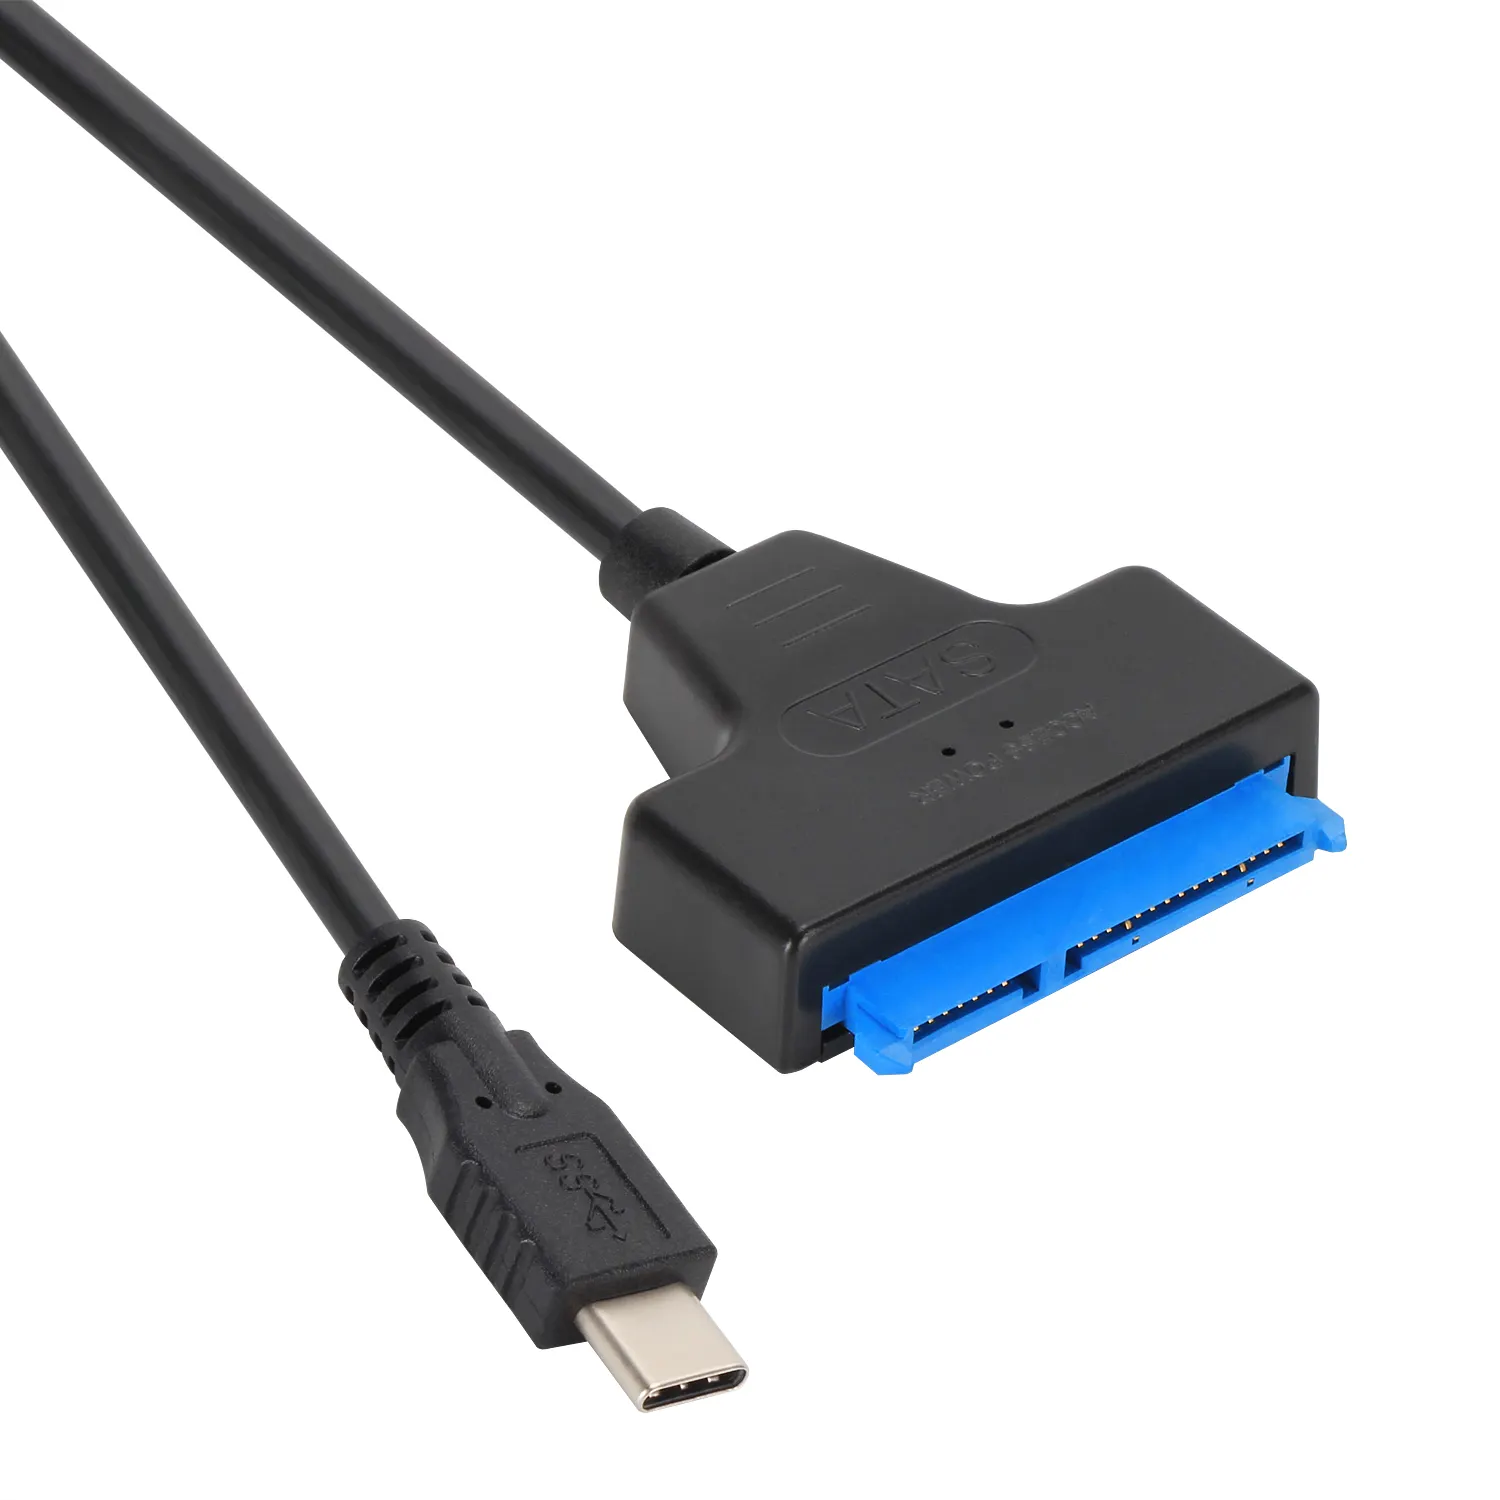 VCOM USB Type-c 3.0 to 2.5 Inch SATA III Hard Drive Adapter Cable 5Gbps USB 3.0 Hard Drive Adapter Cable 0.22m